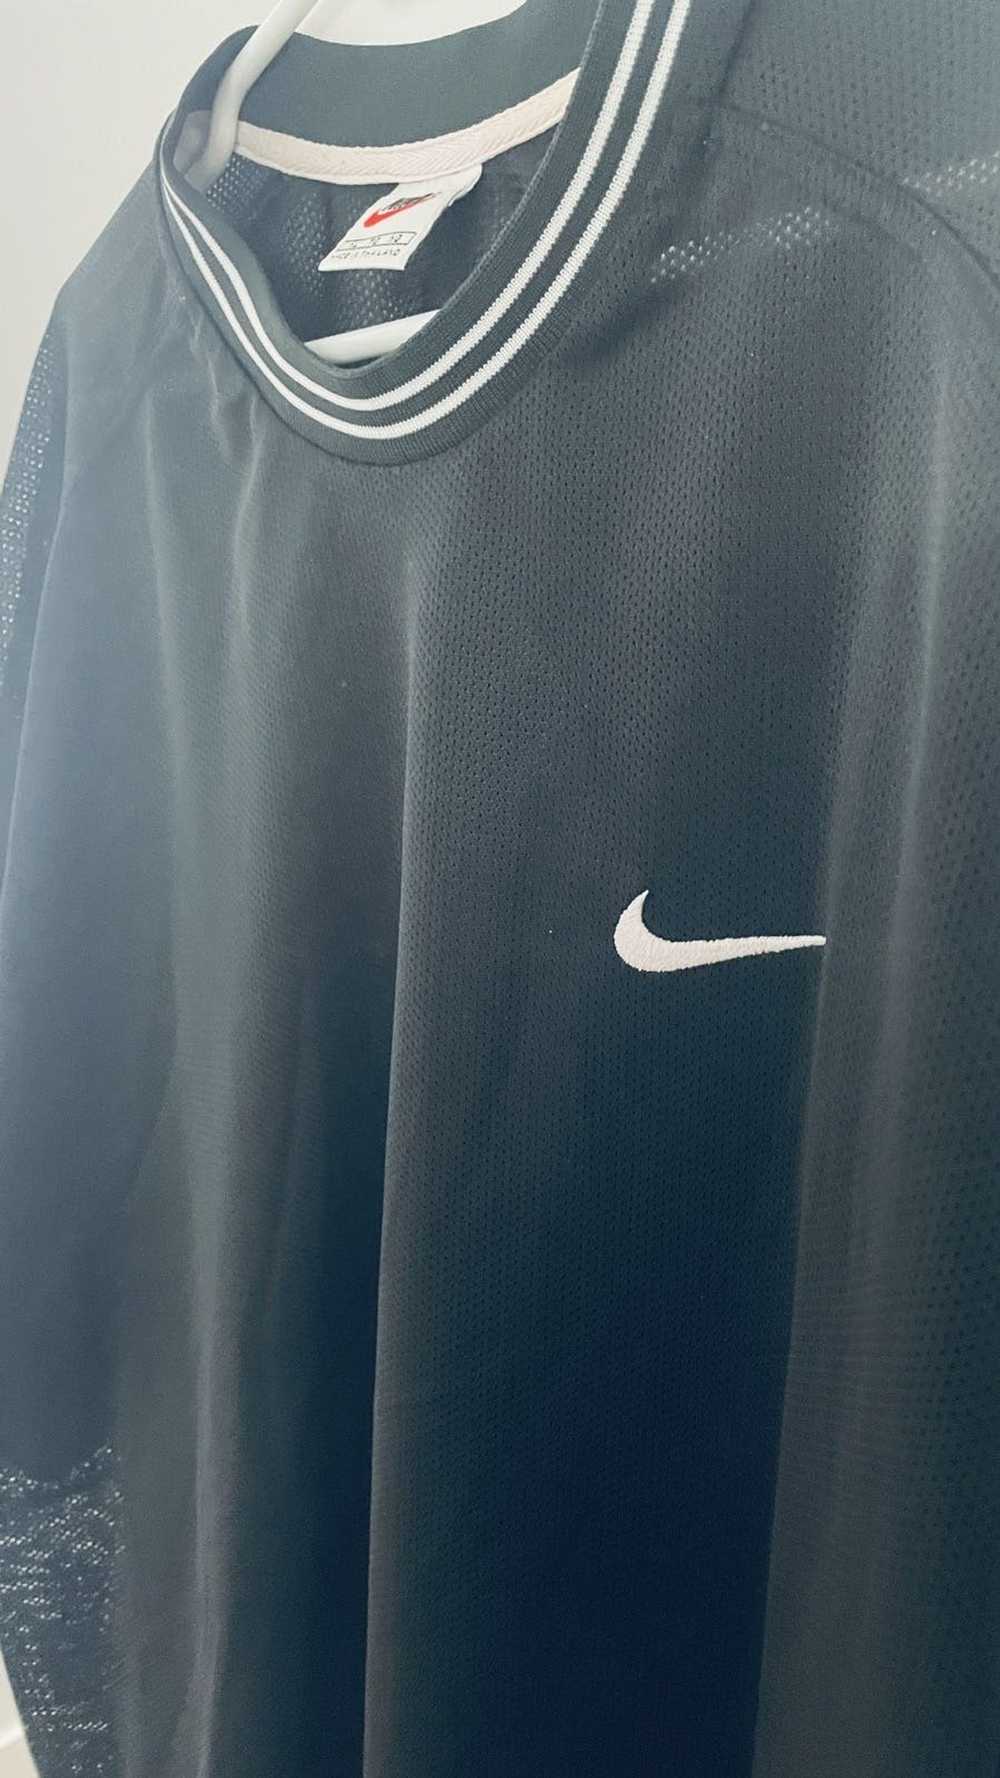 Nike nike t shirt OG XL - image 2